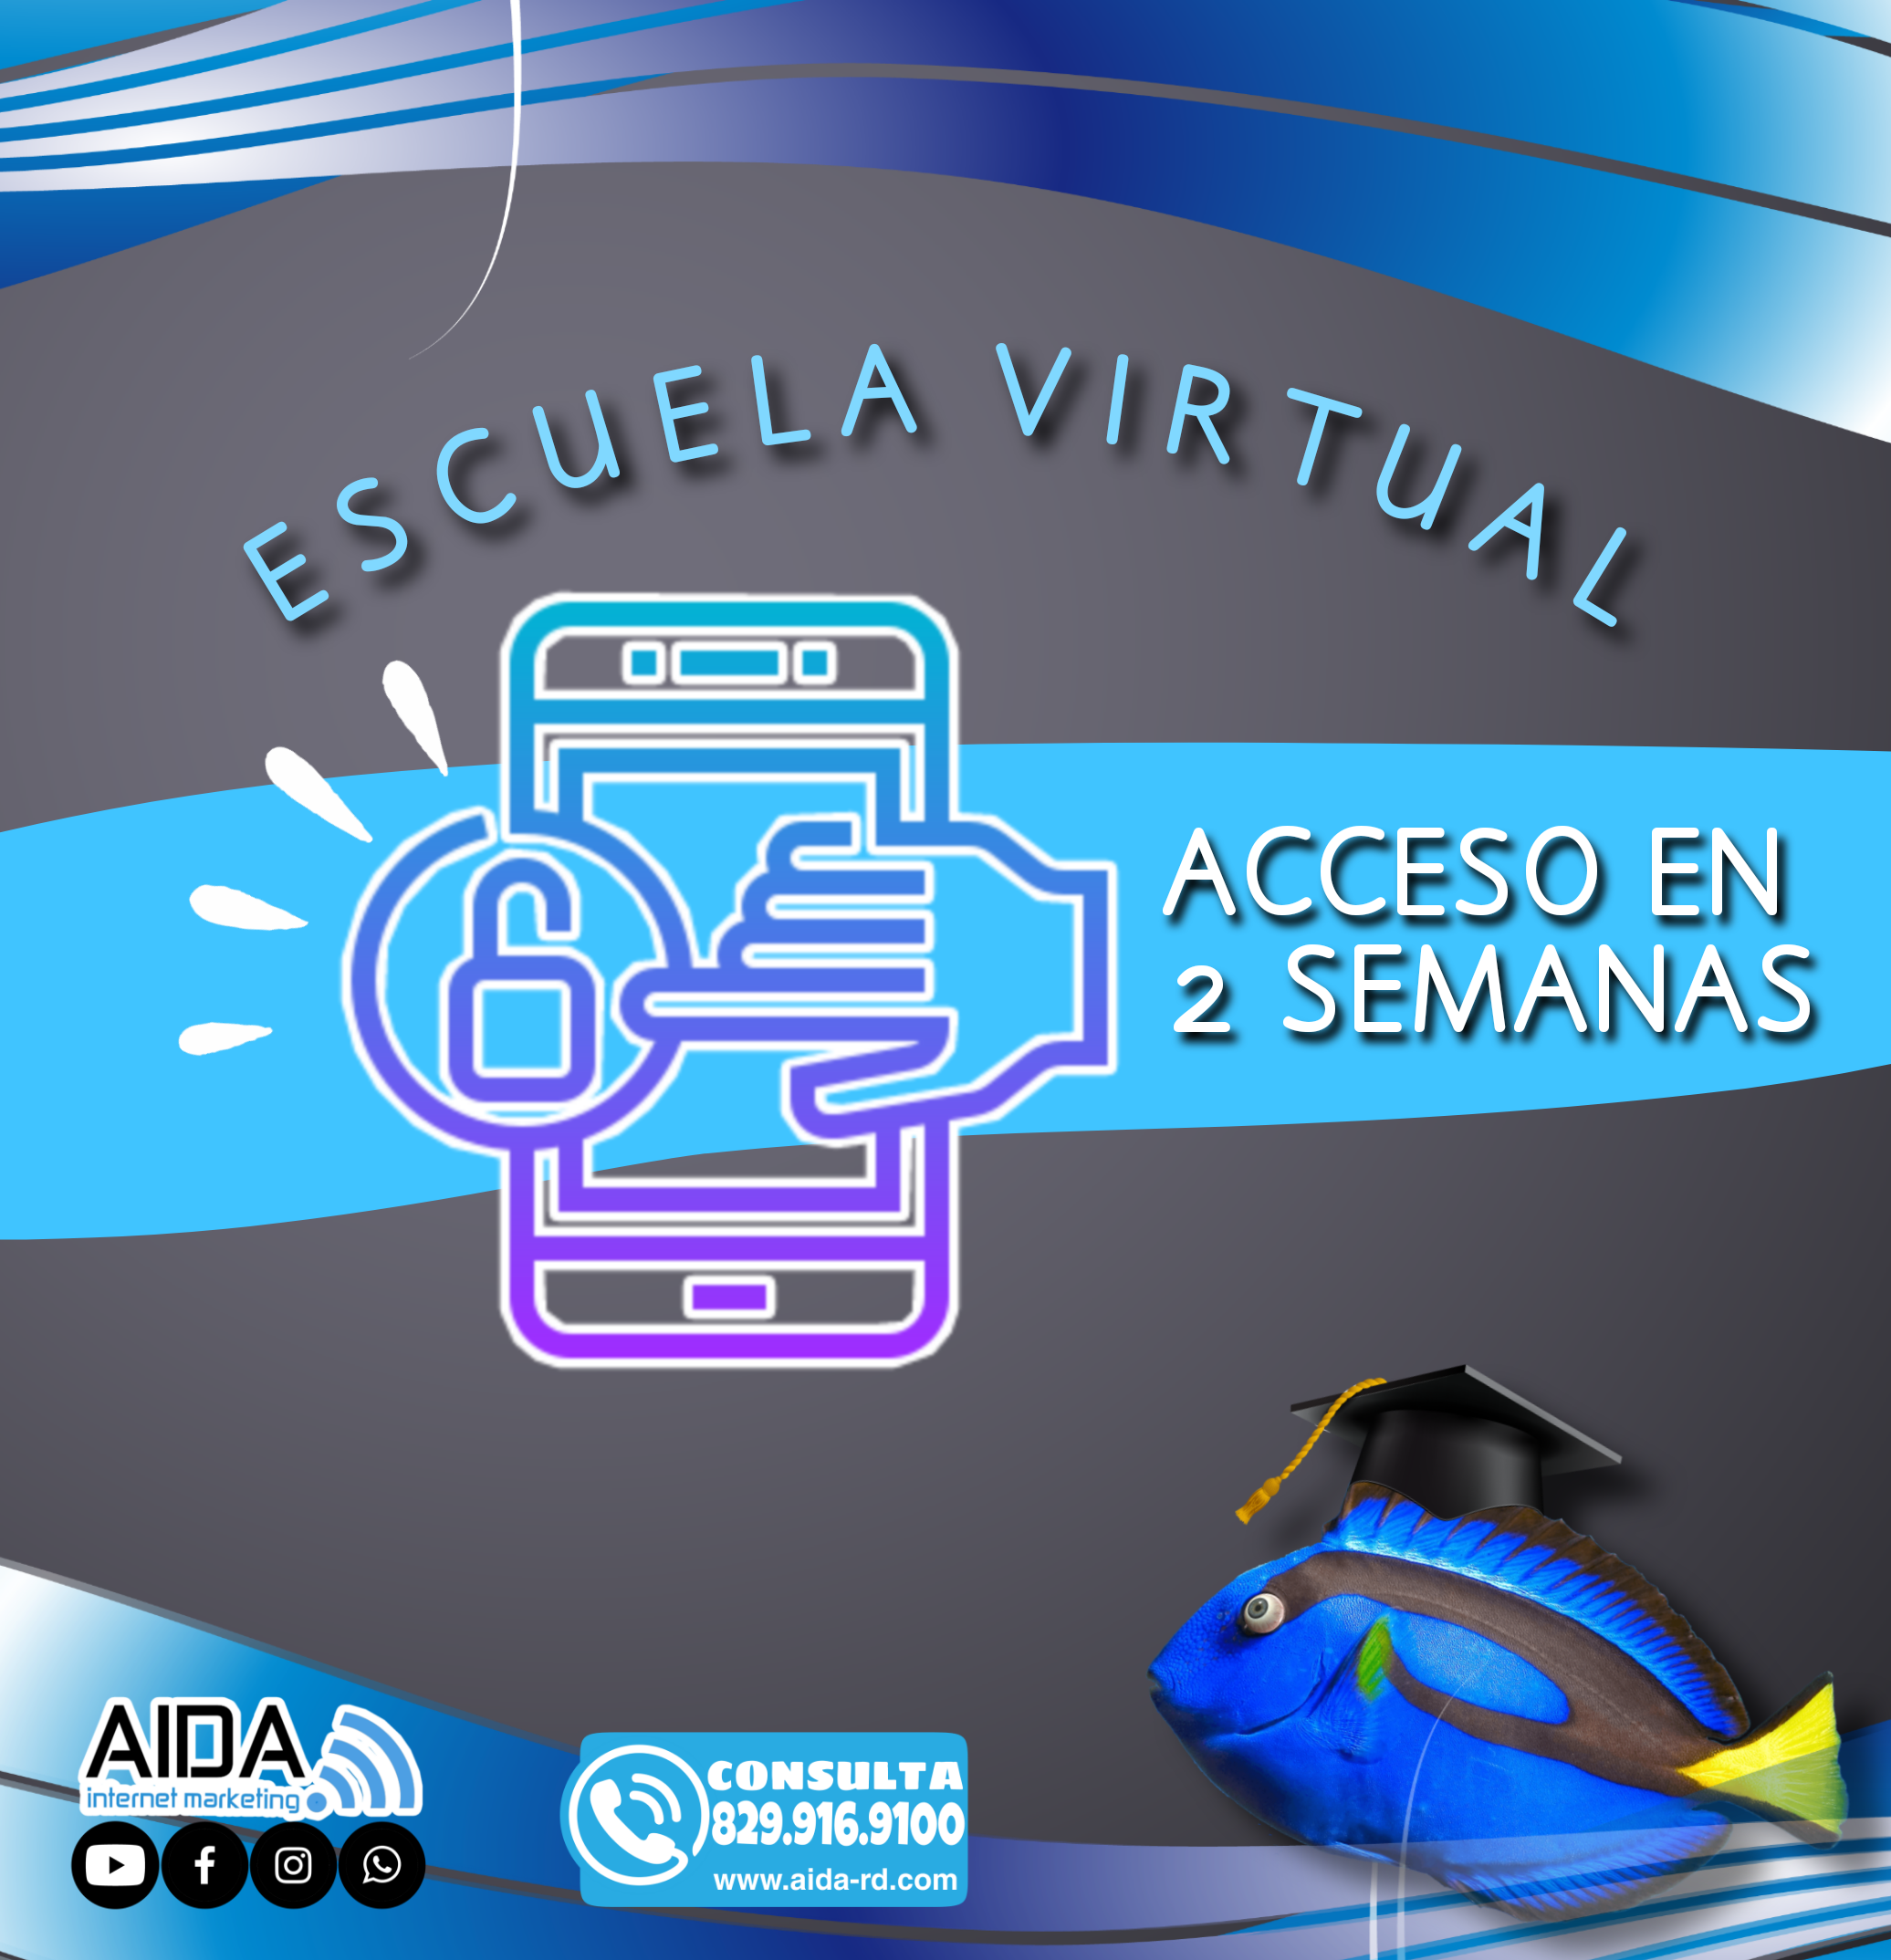 Escuela Virtual Acceso en 2 semanas